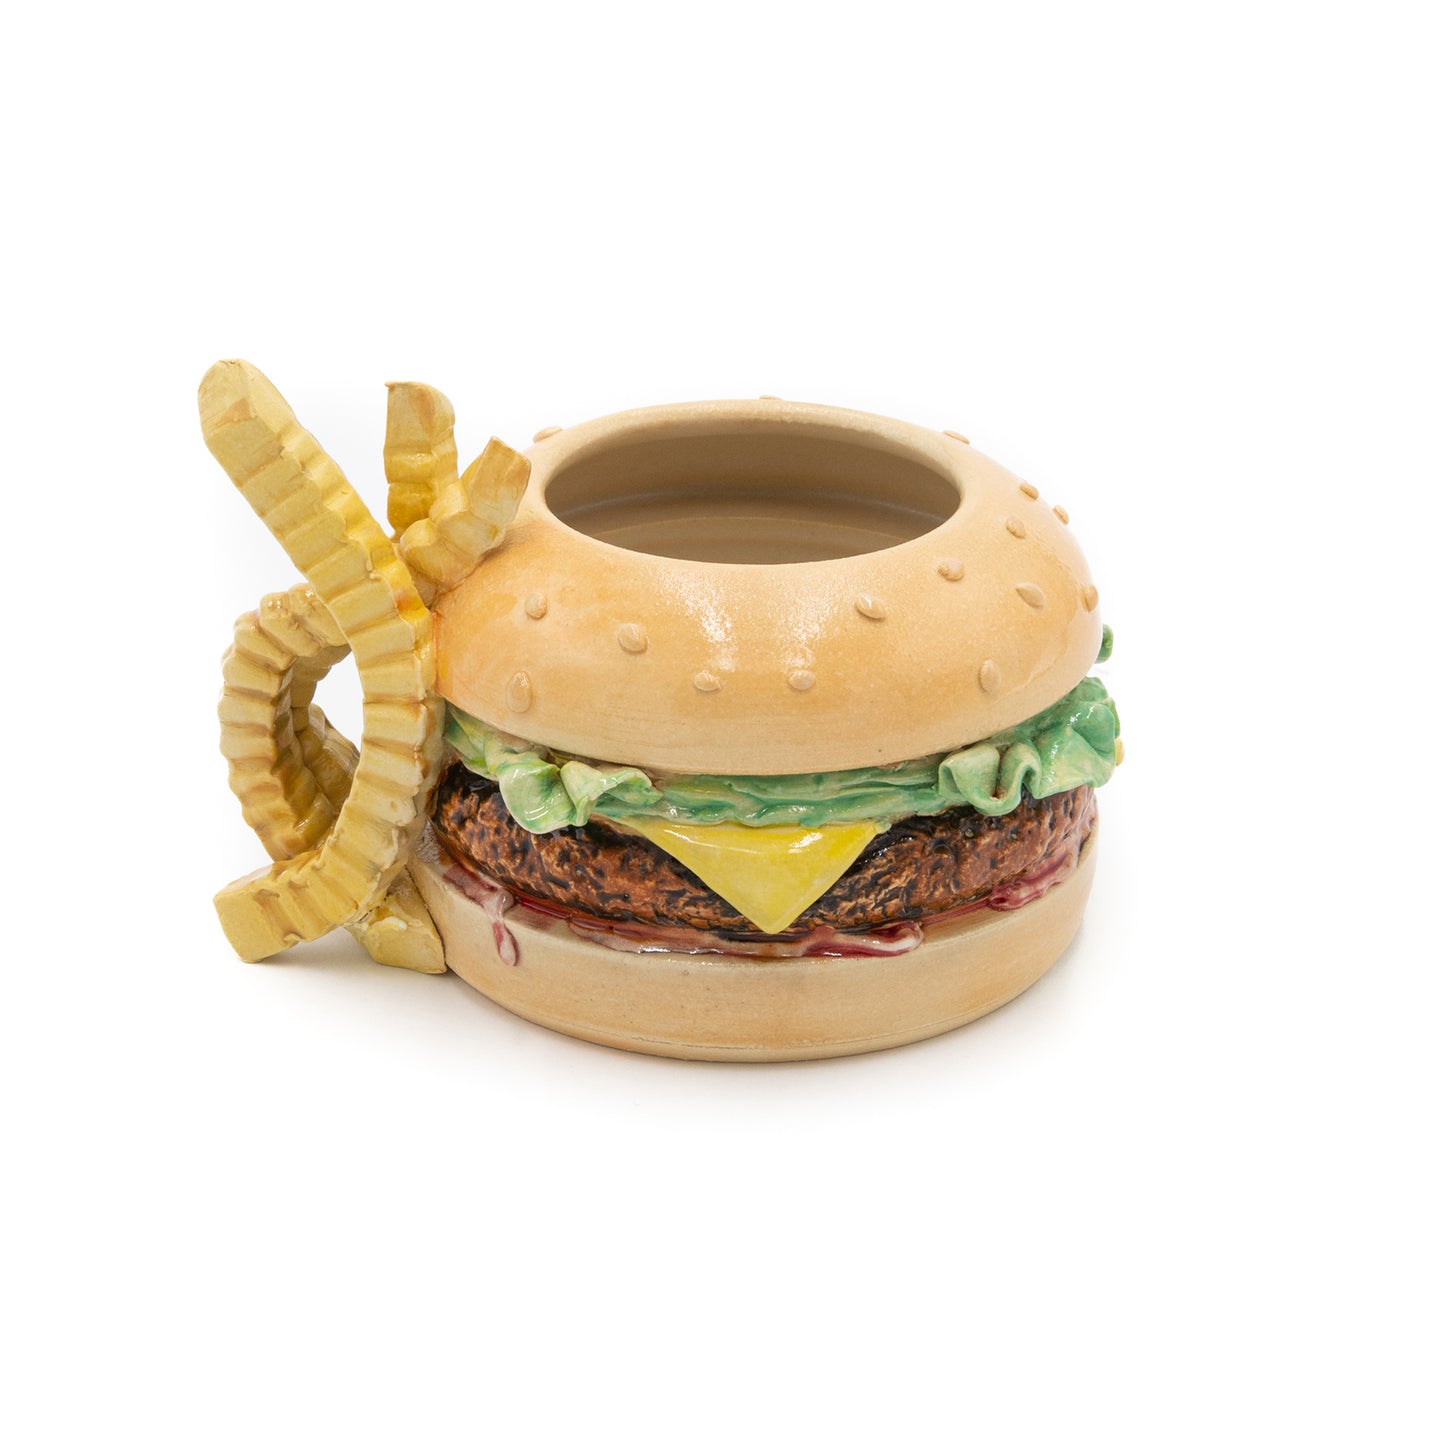 Cheeseburger Mug